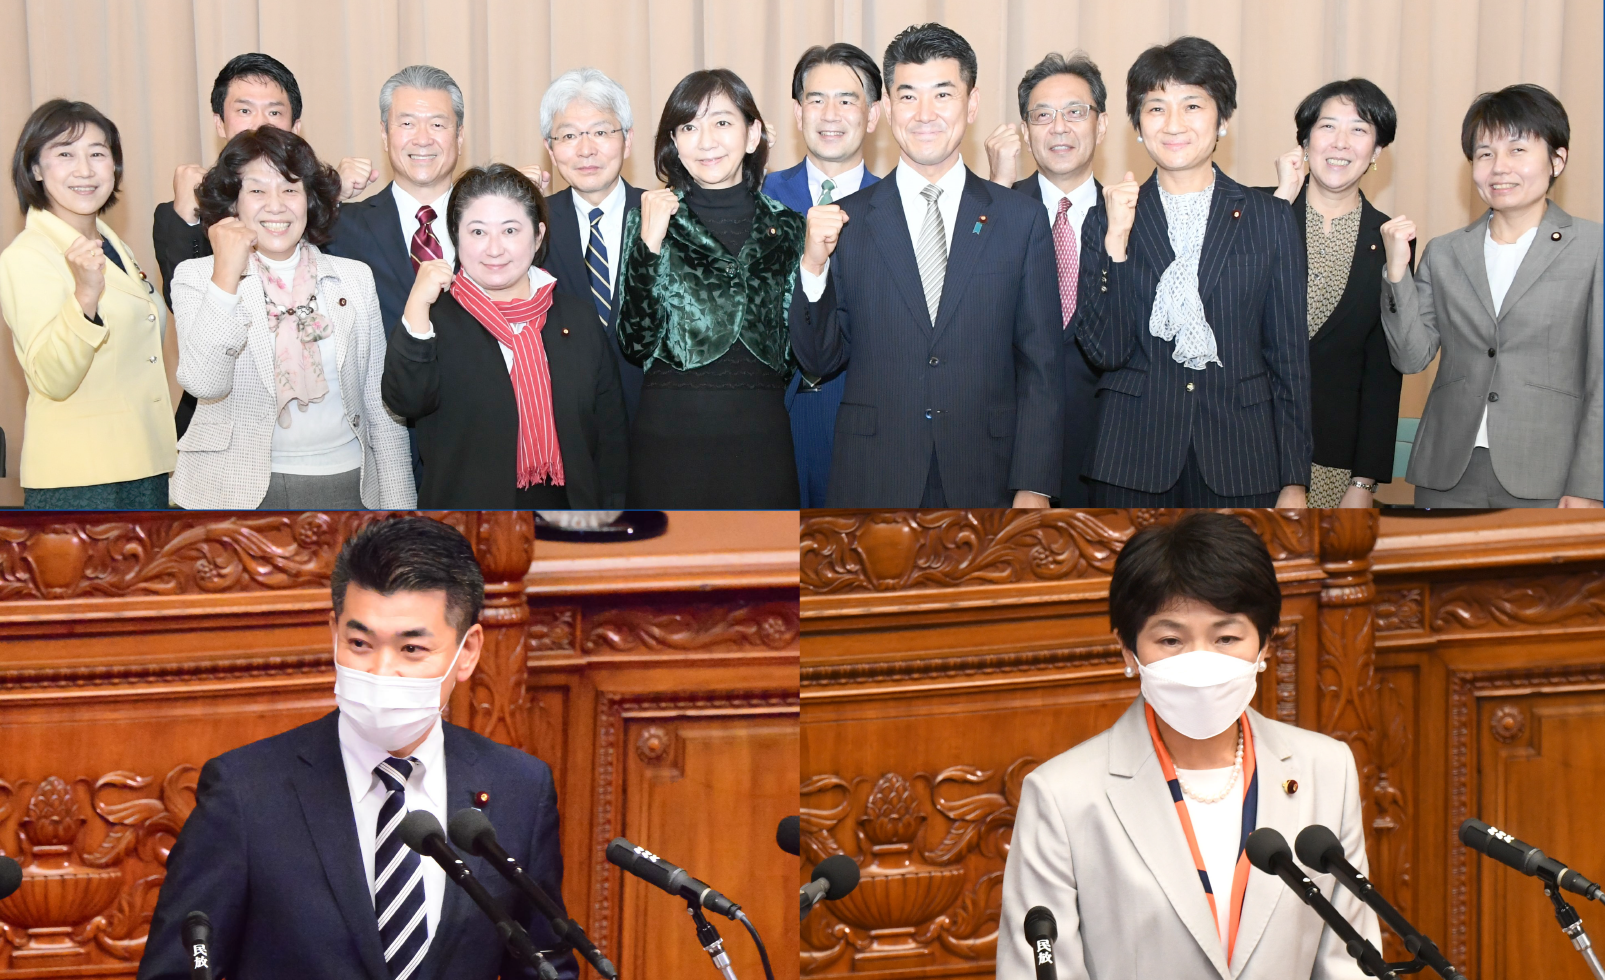 2021年12月10日立憲ニュース、新執行役員の記念写真と泉、西村両氏の代表質問登壇の写真